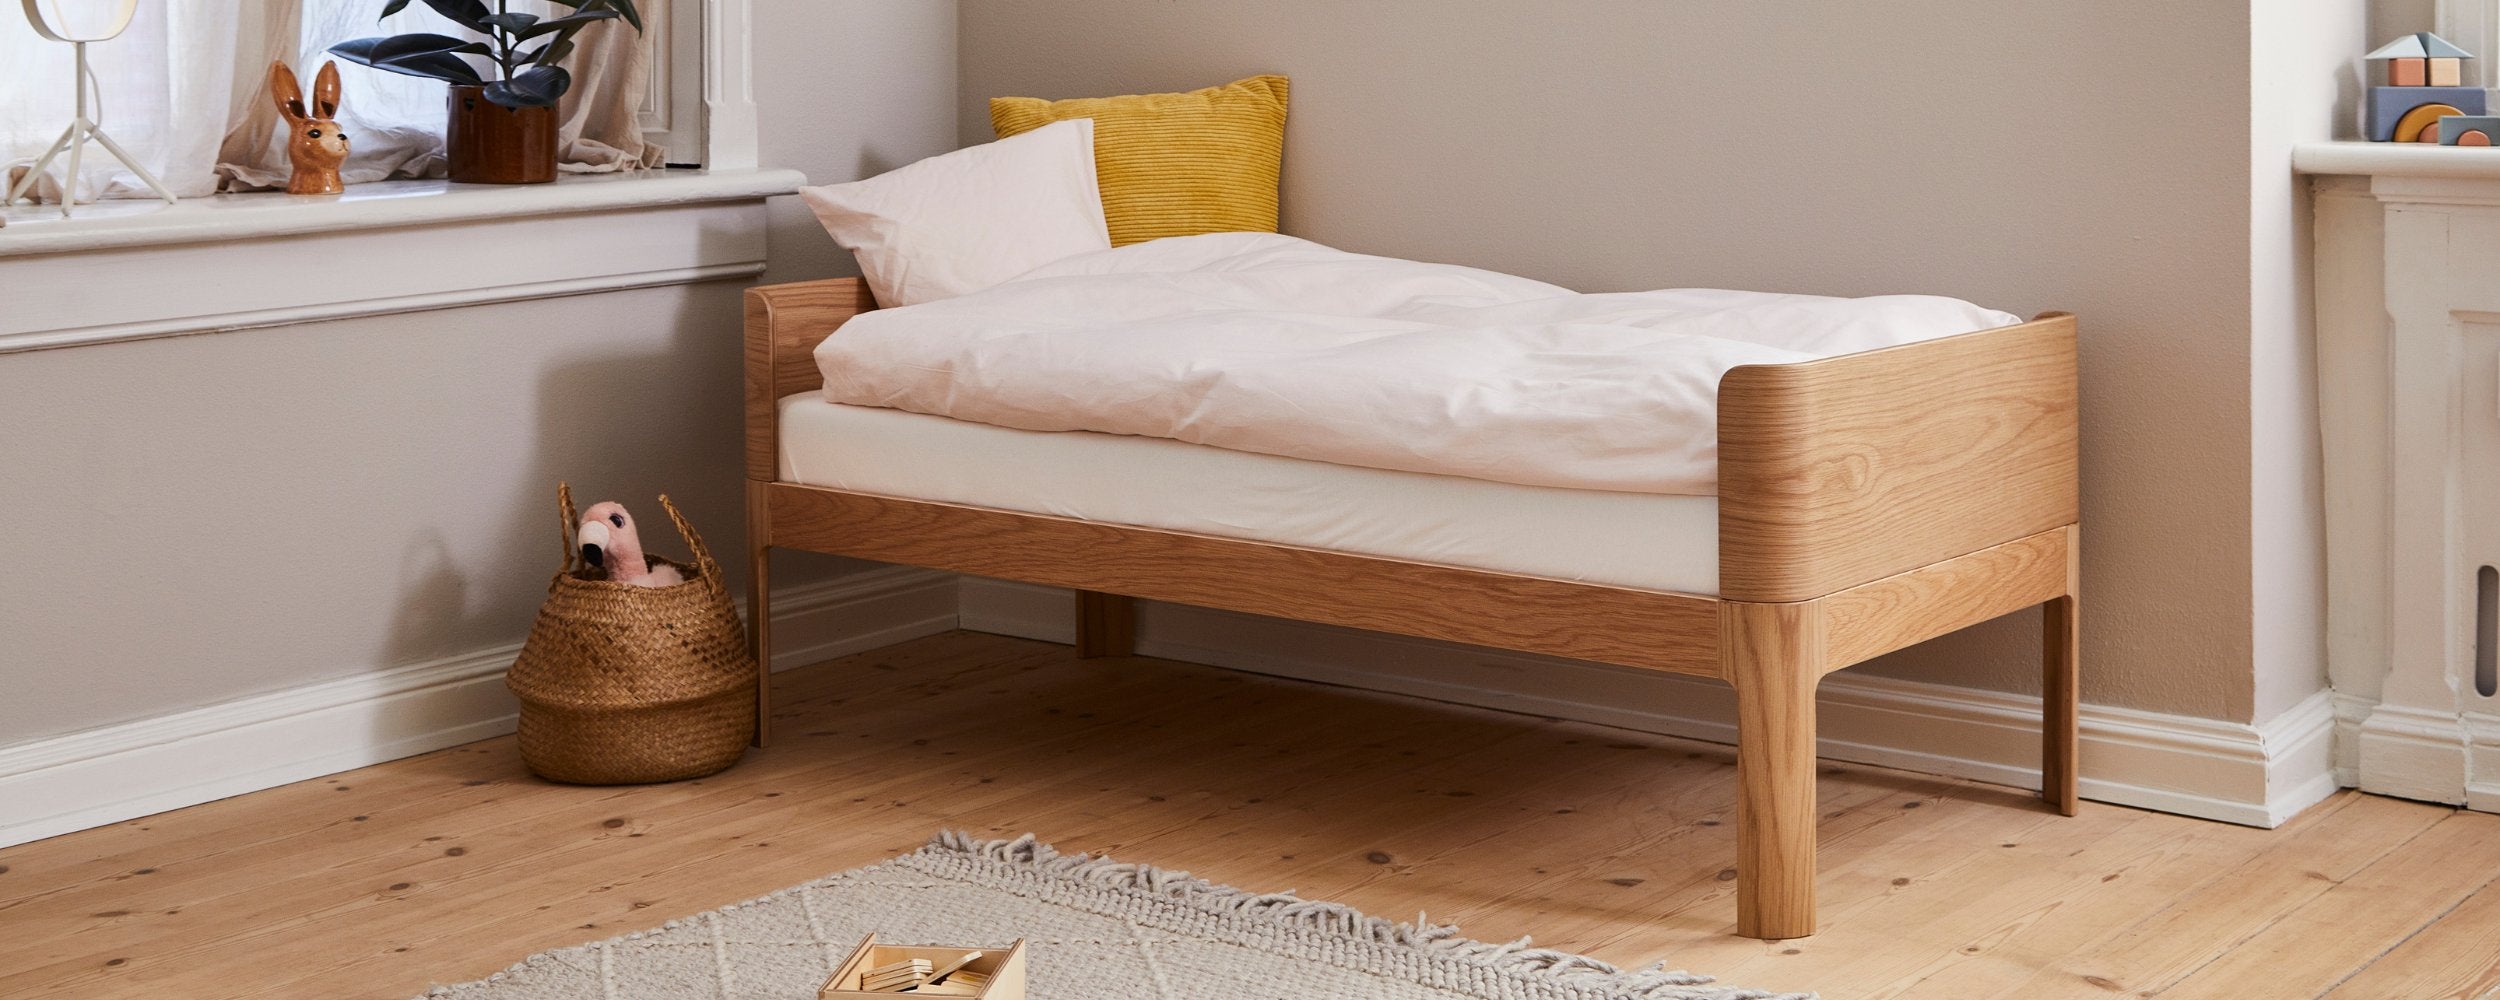 diepvries Alstublieft Bezet FLEXA Bed | See our Collection of Kids bed Here | FLEXA